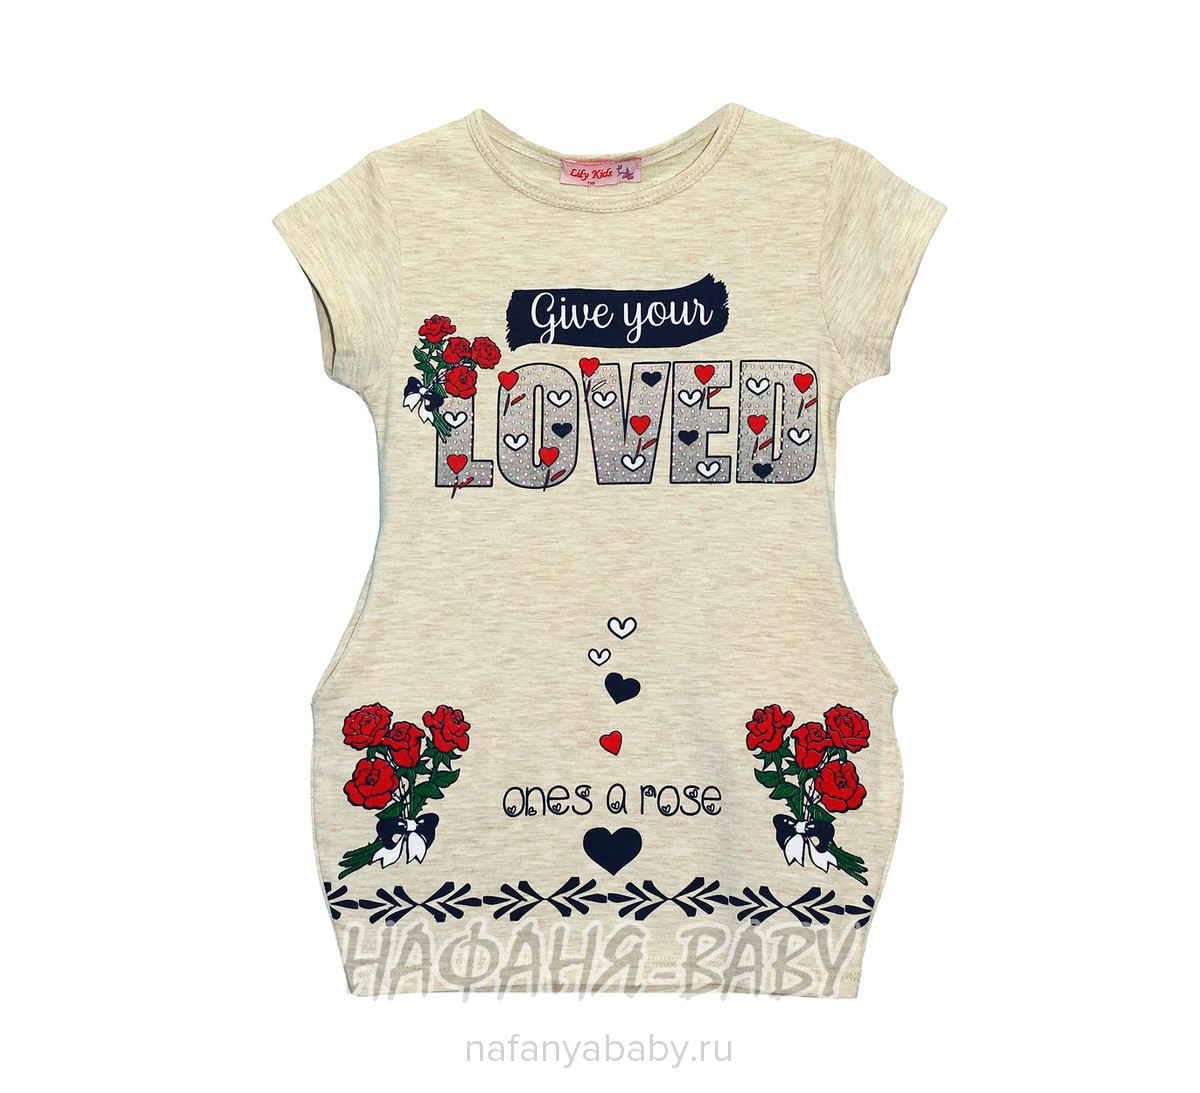 Детское платье-туника Lily Kids, купить в интернет магазине Нафаня. арт: 4516.